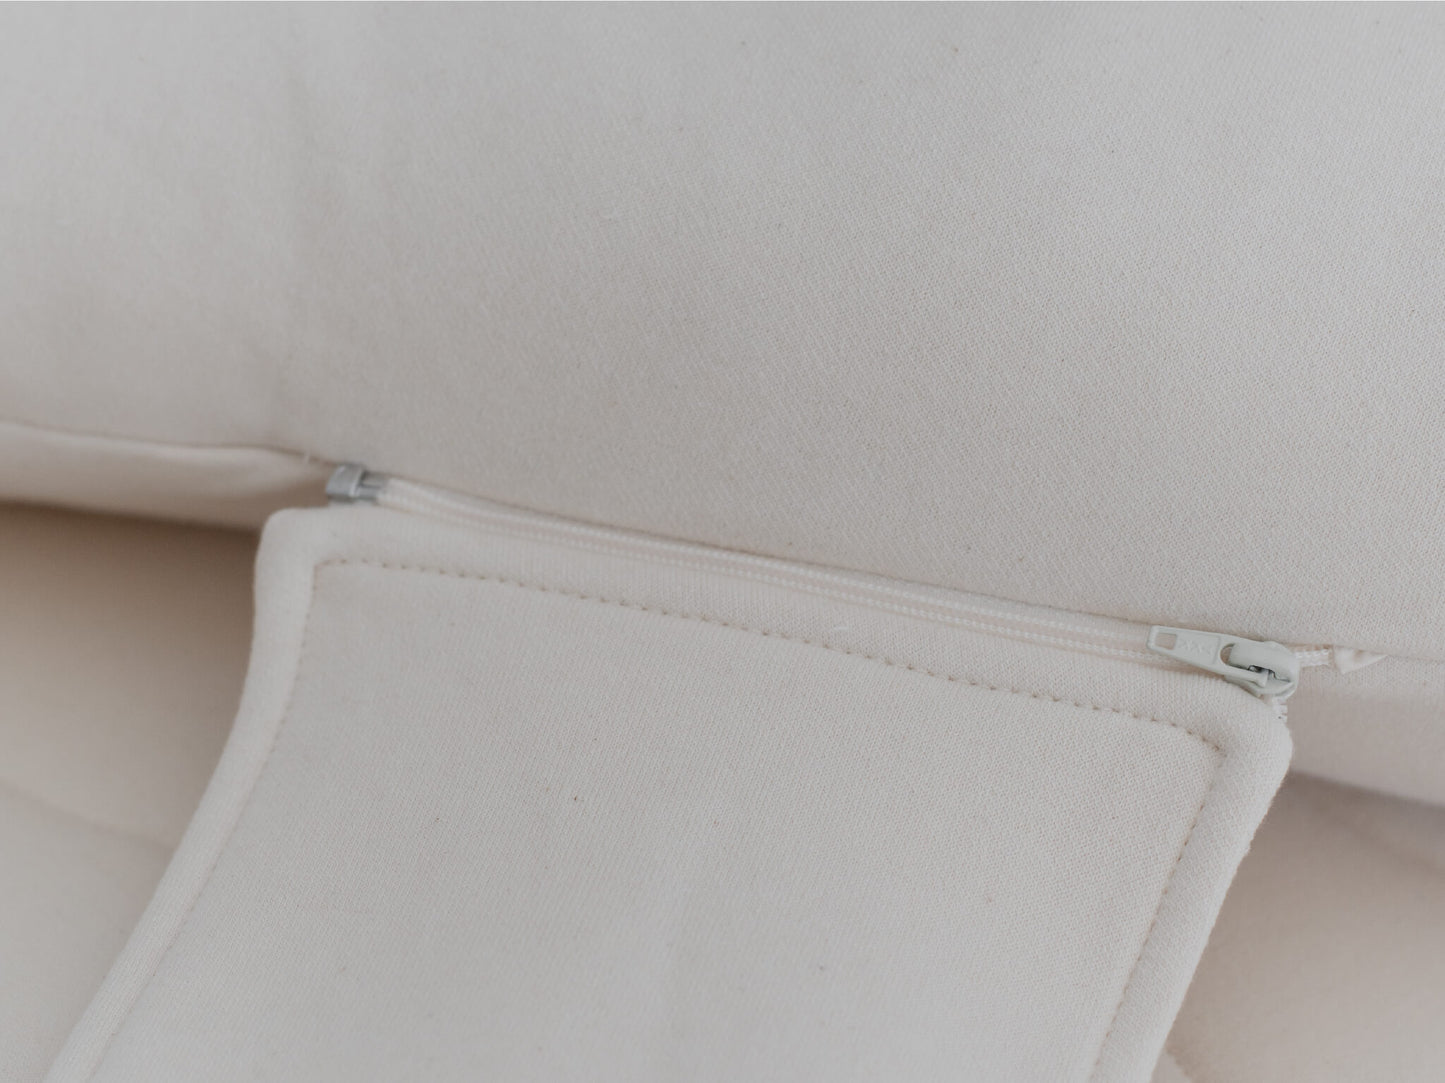 Obasan organic Pregnancy Pillow with detachable zipper